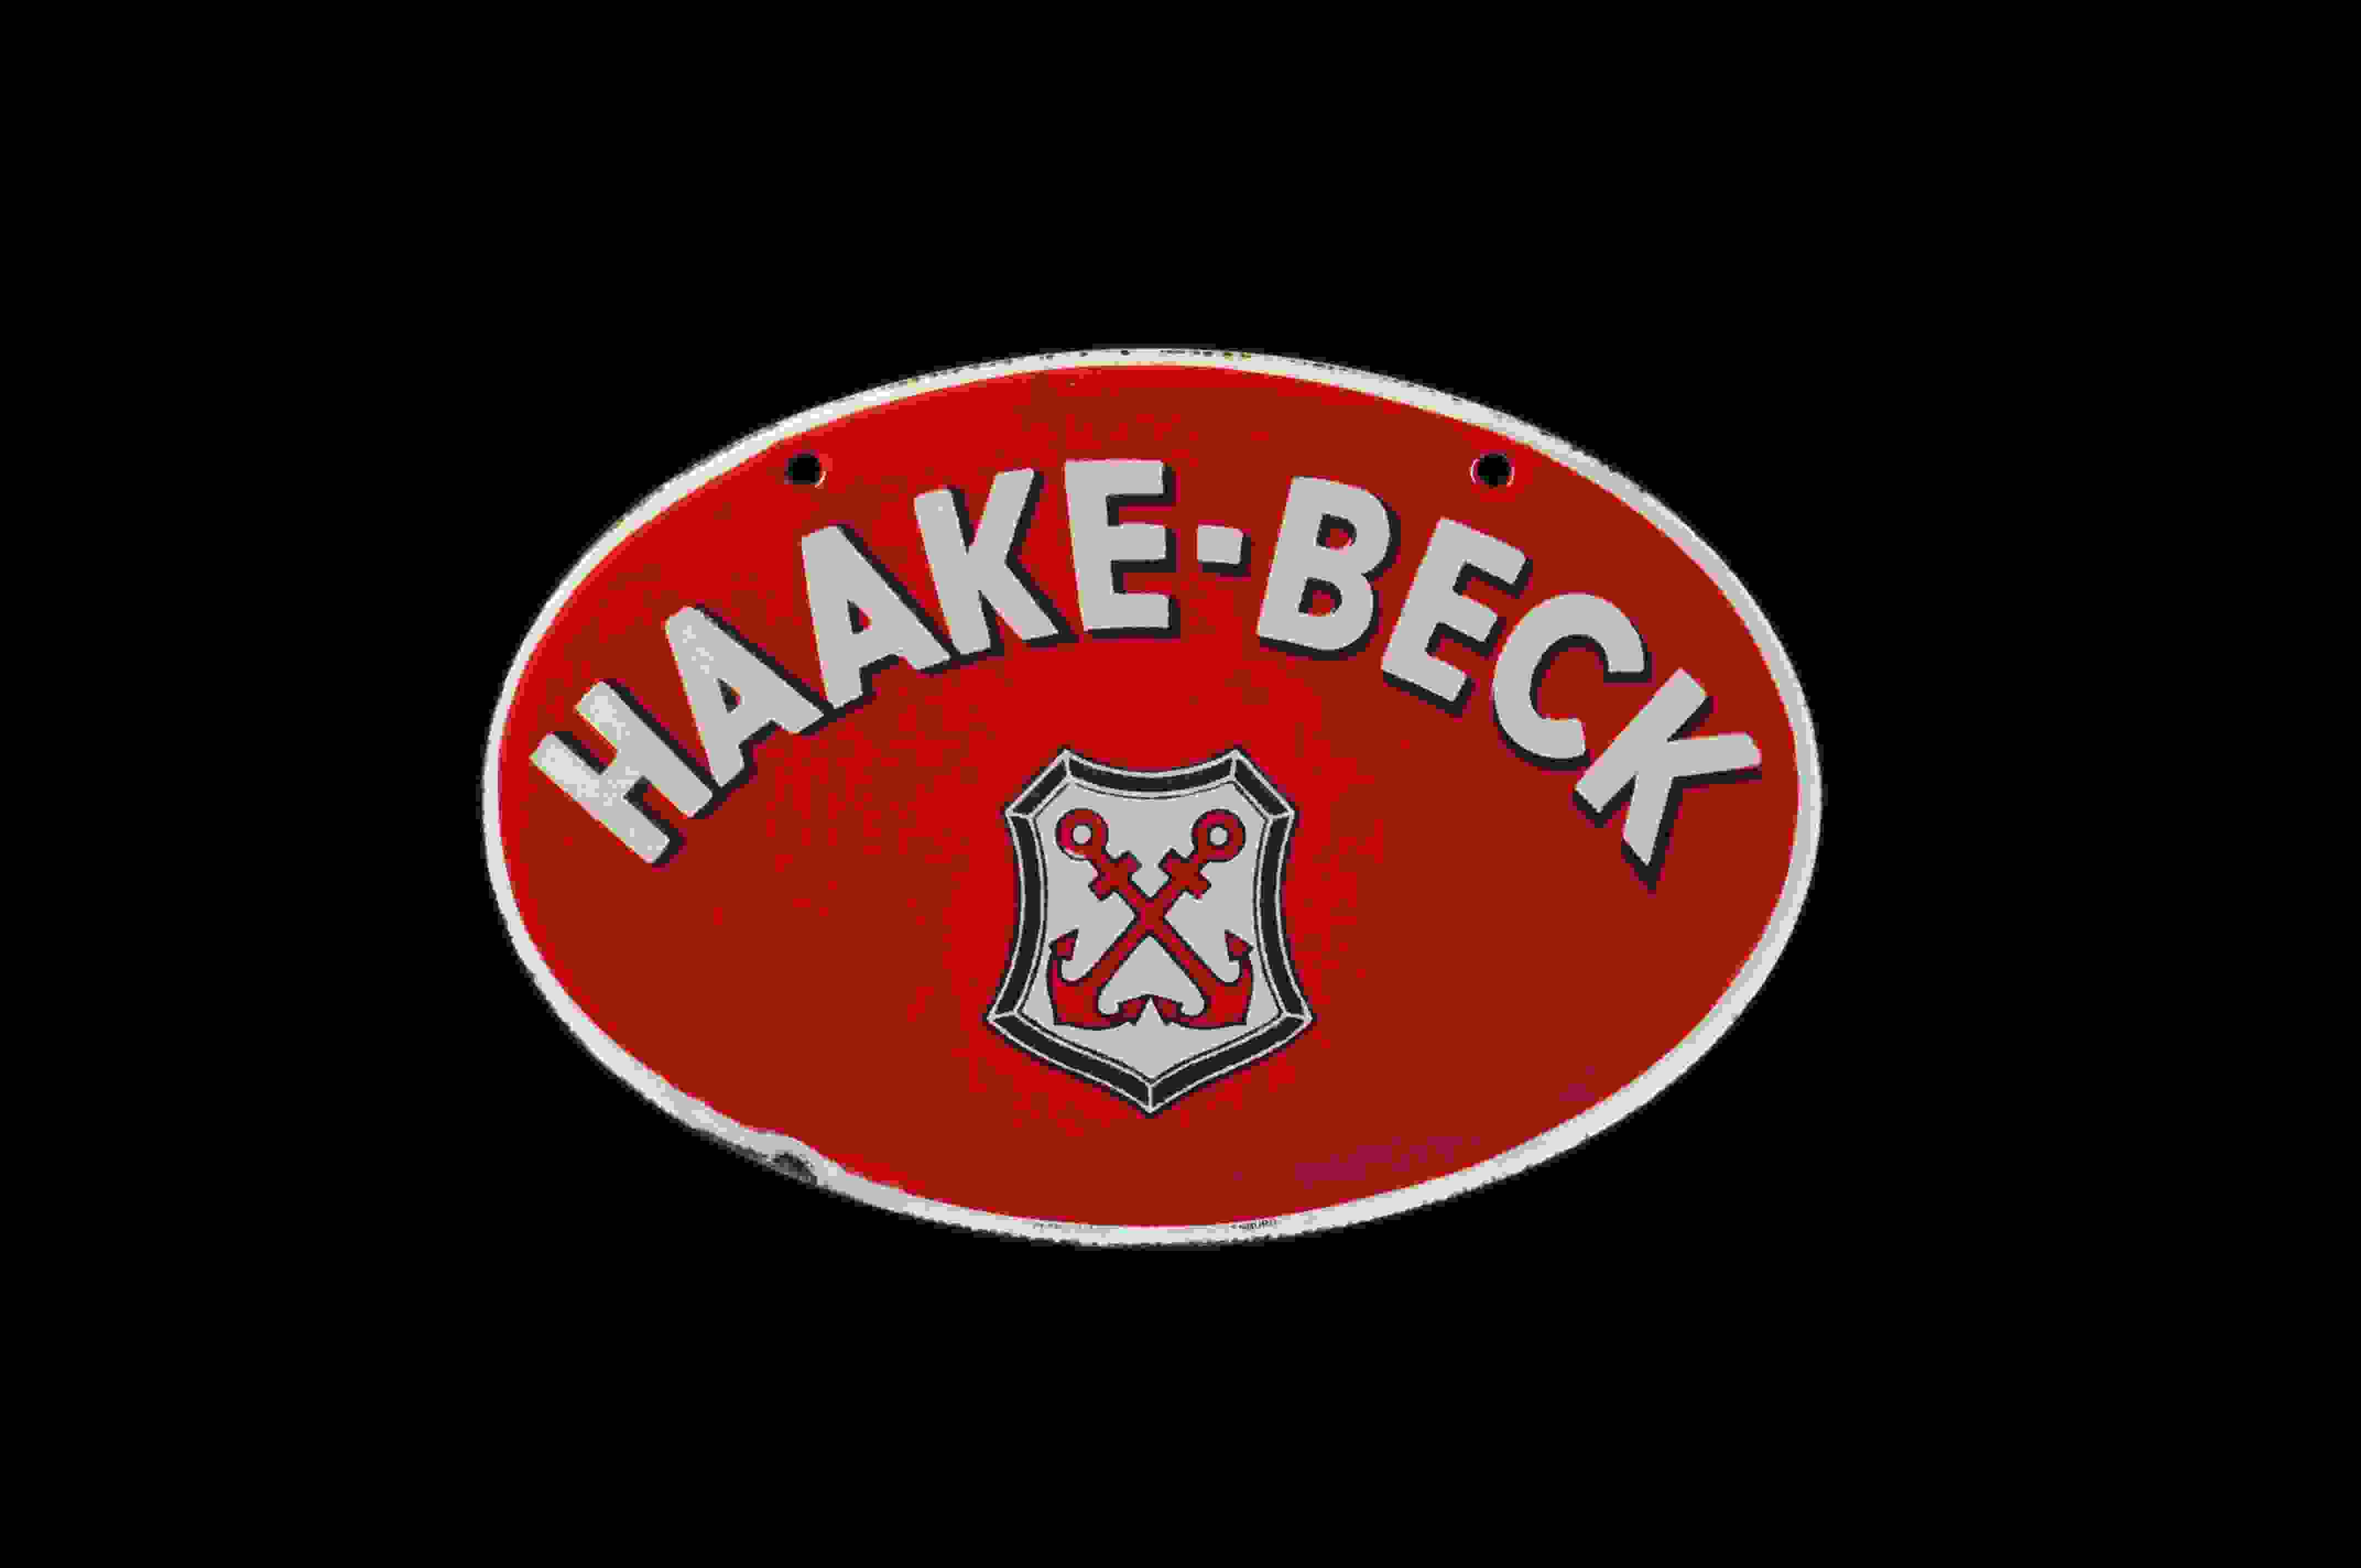 Haake-Beck 